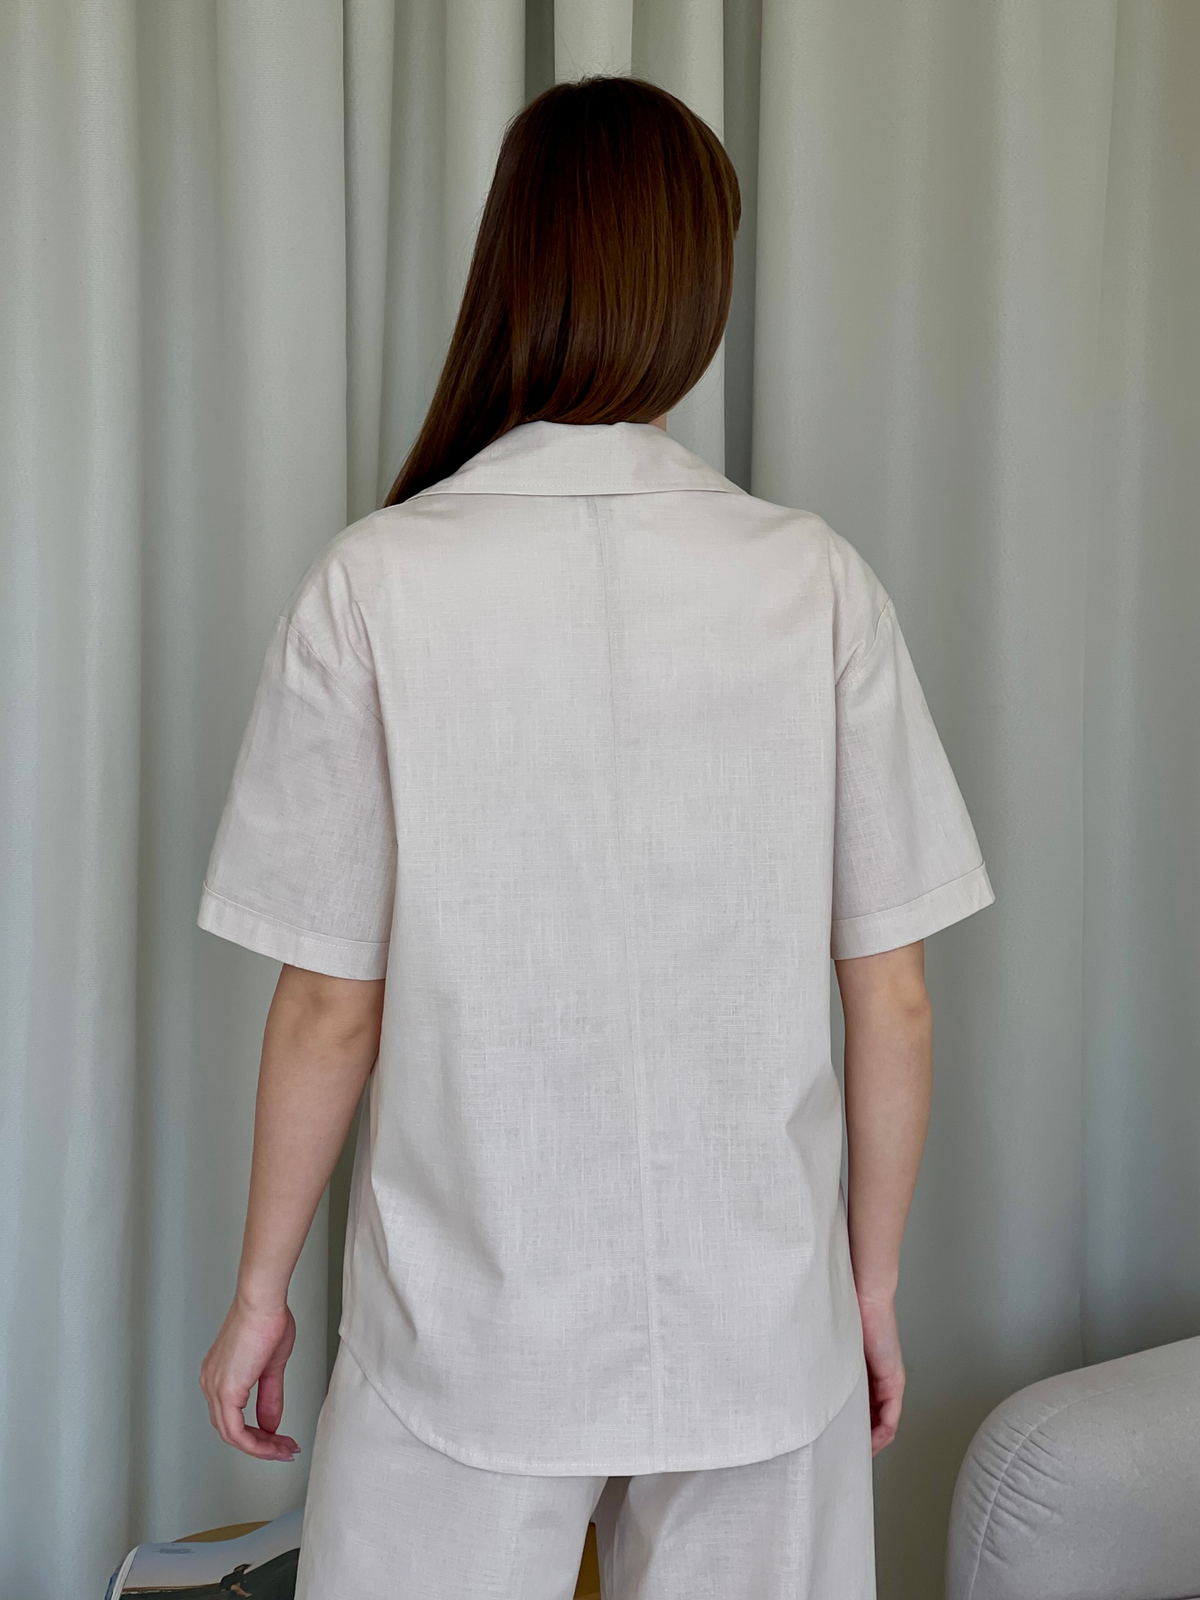 Купить Льняная рубашка с коротким рукавом бежевая Merlini Нино 200001206 размер 42-44 (S-M) в интернет-магазине